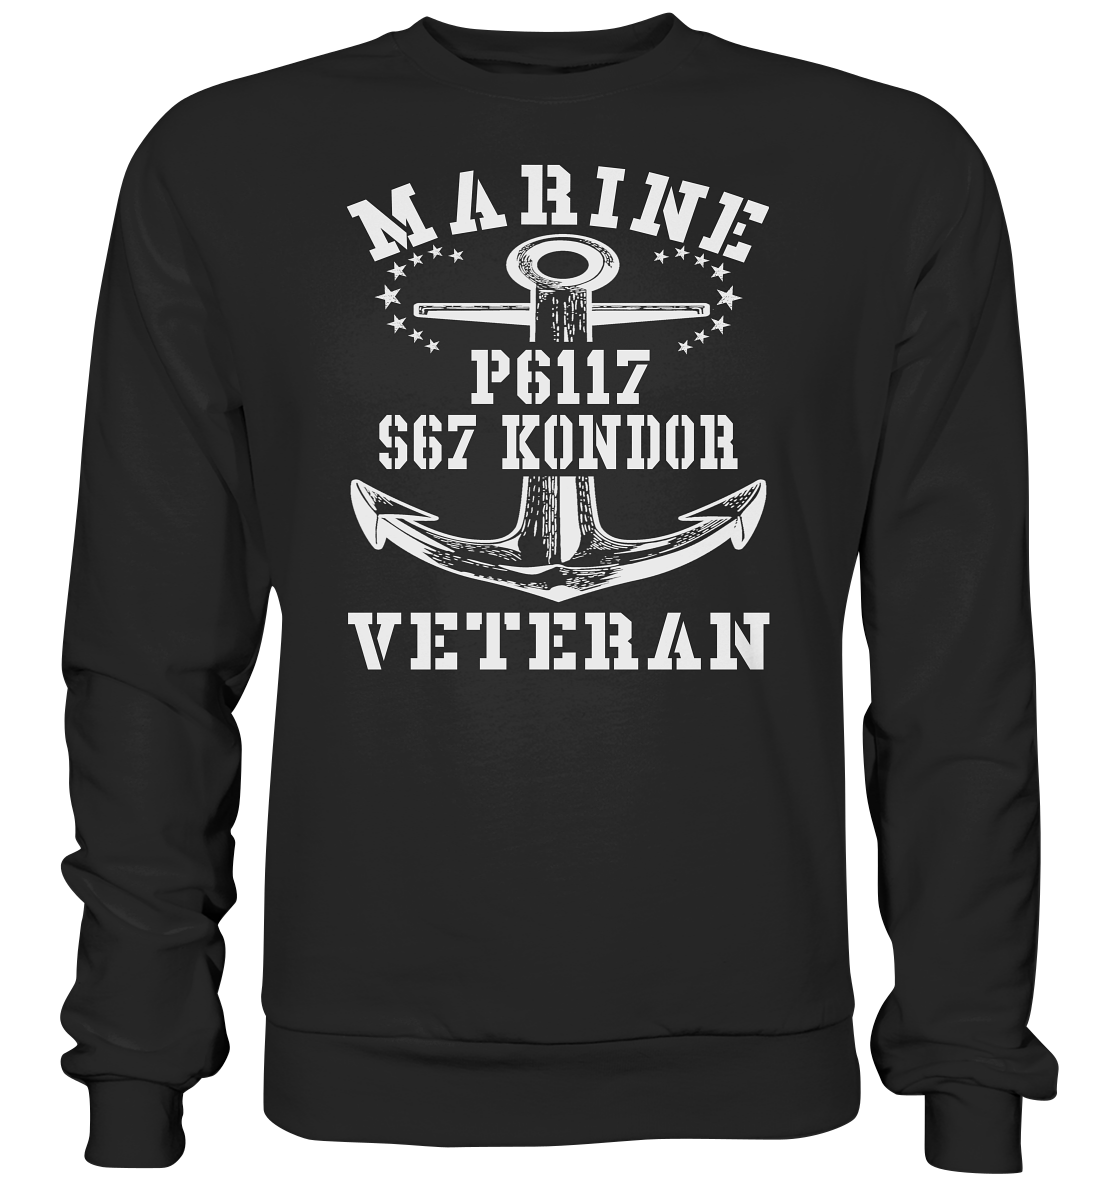 FK-Schnellboot P6117 KONDOR Marine Veteran - Premium Sweatshirt